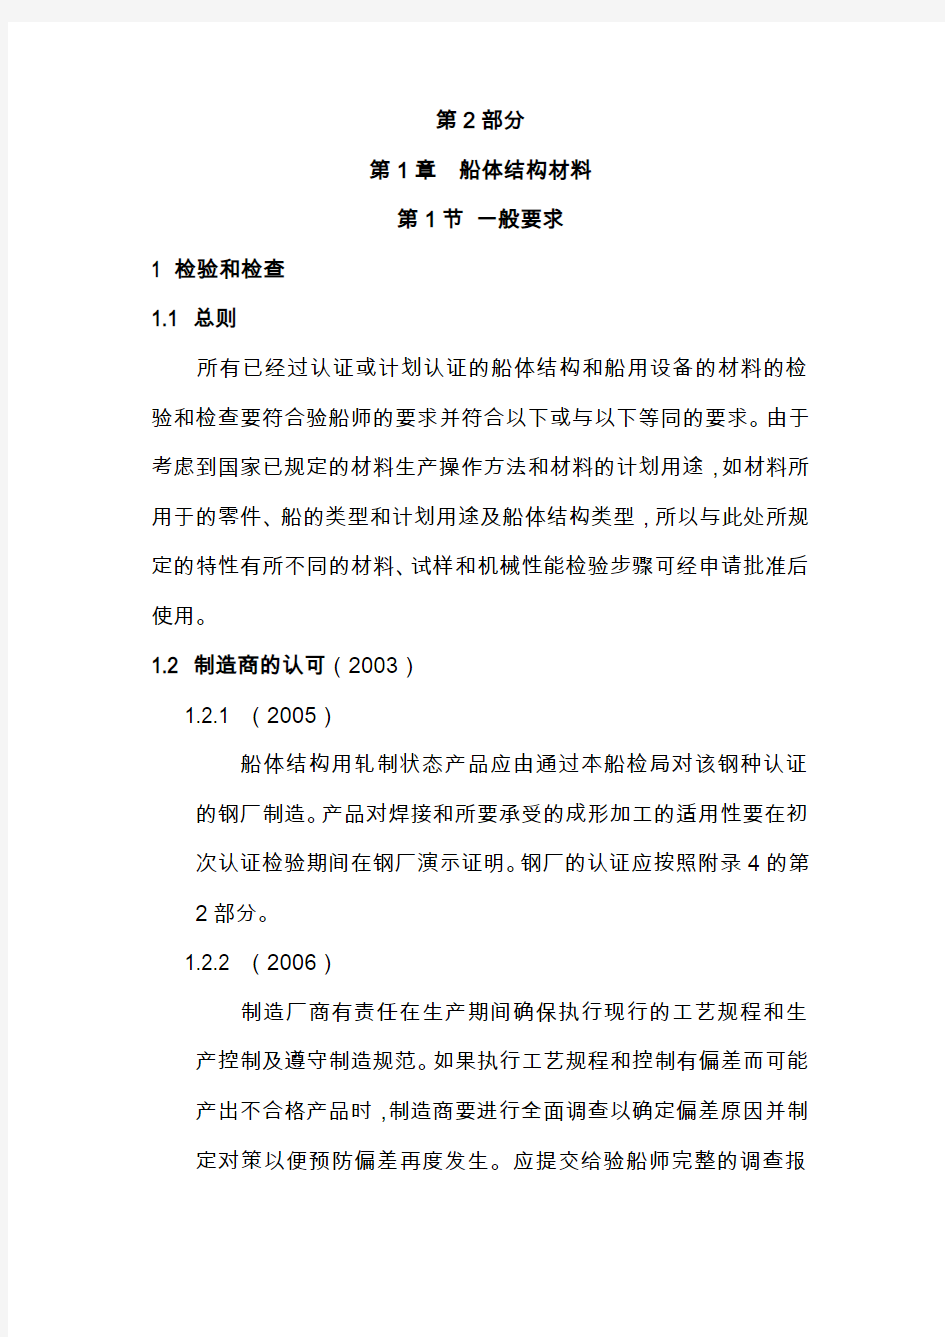 ABS材料与焊接规范(中文)201101